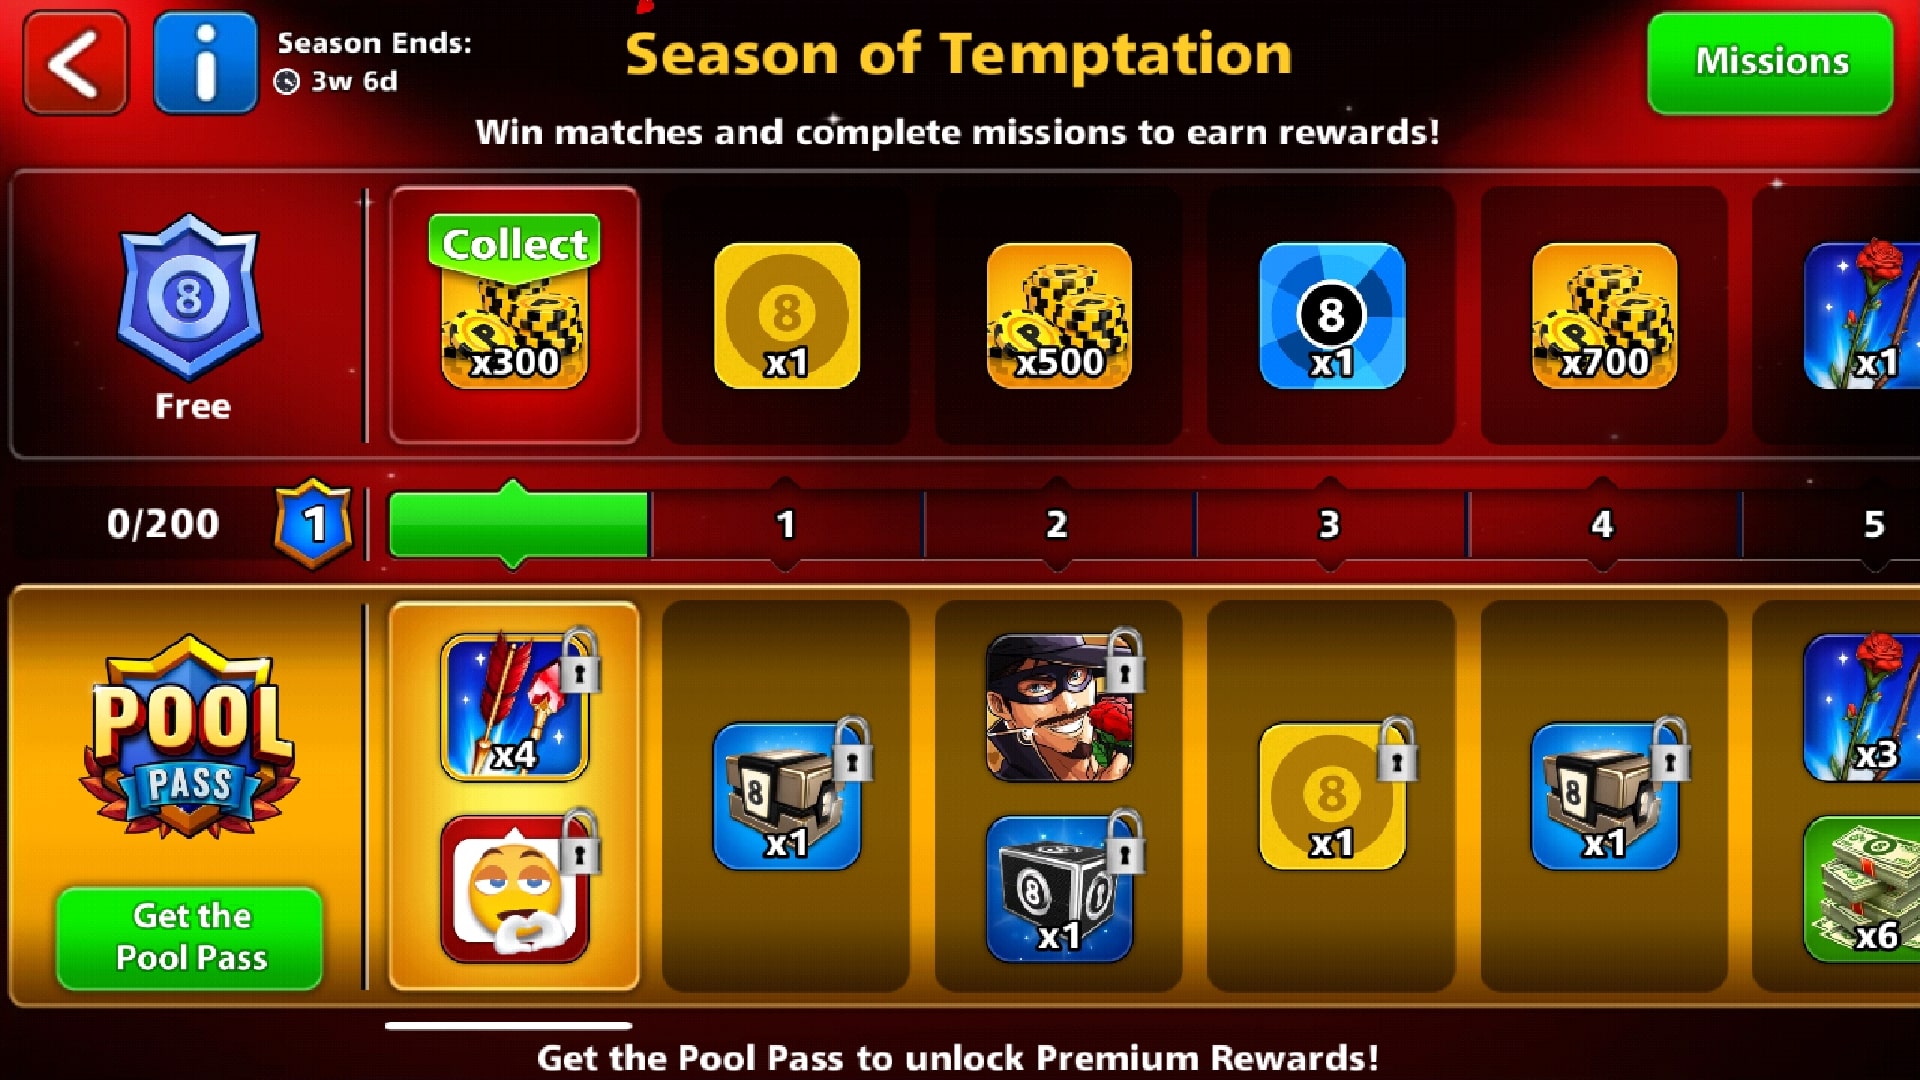 season of temptation pool pass